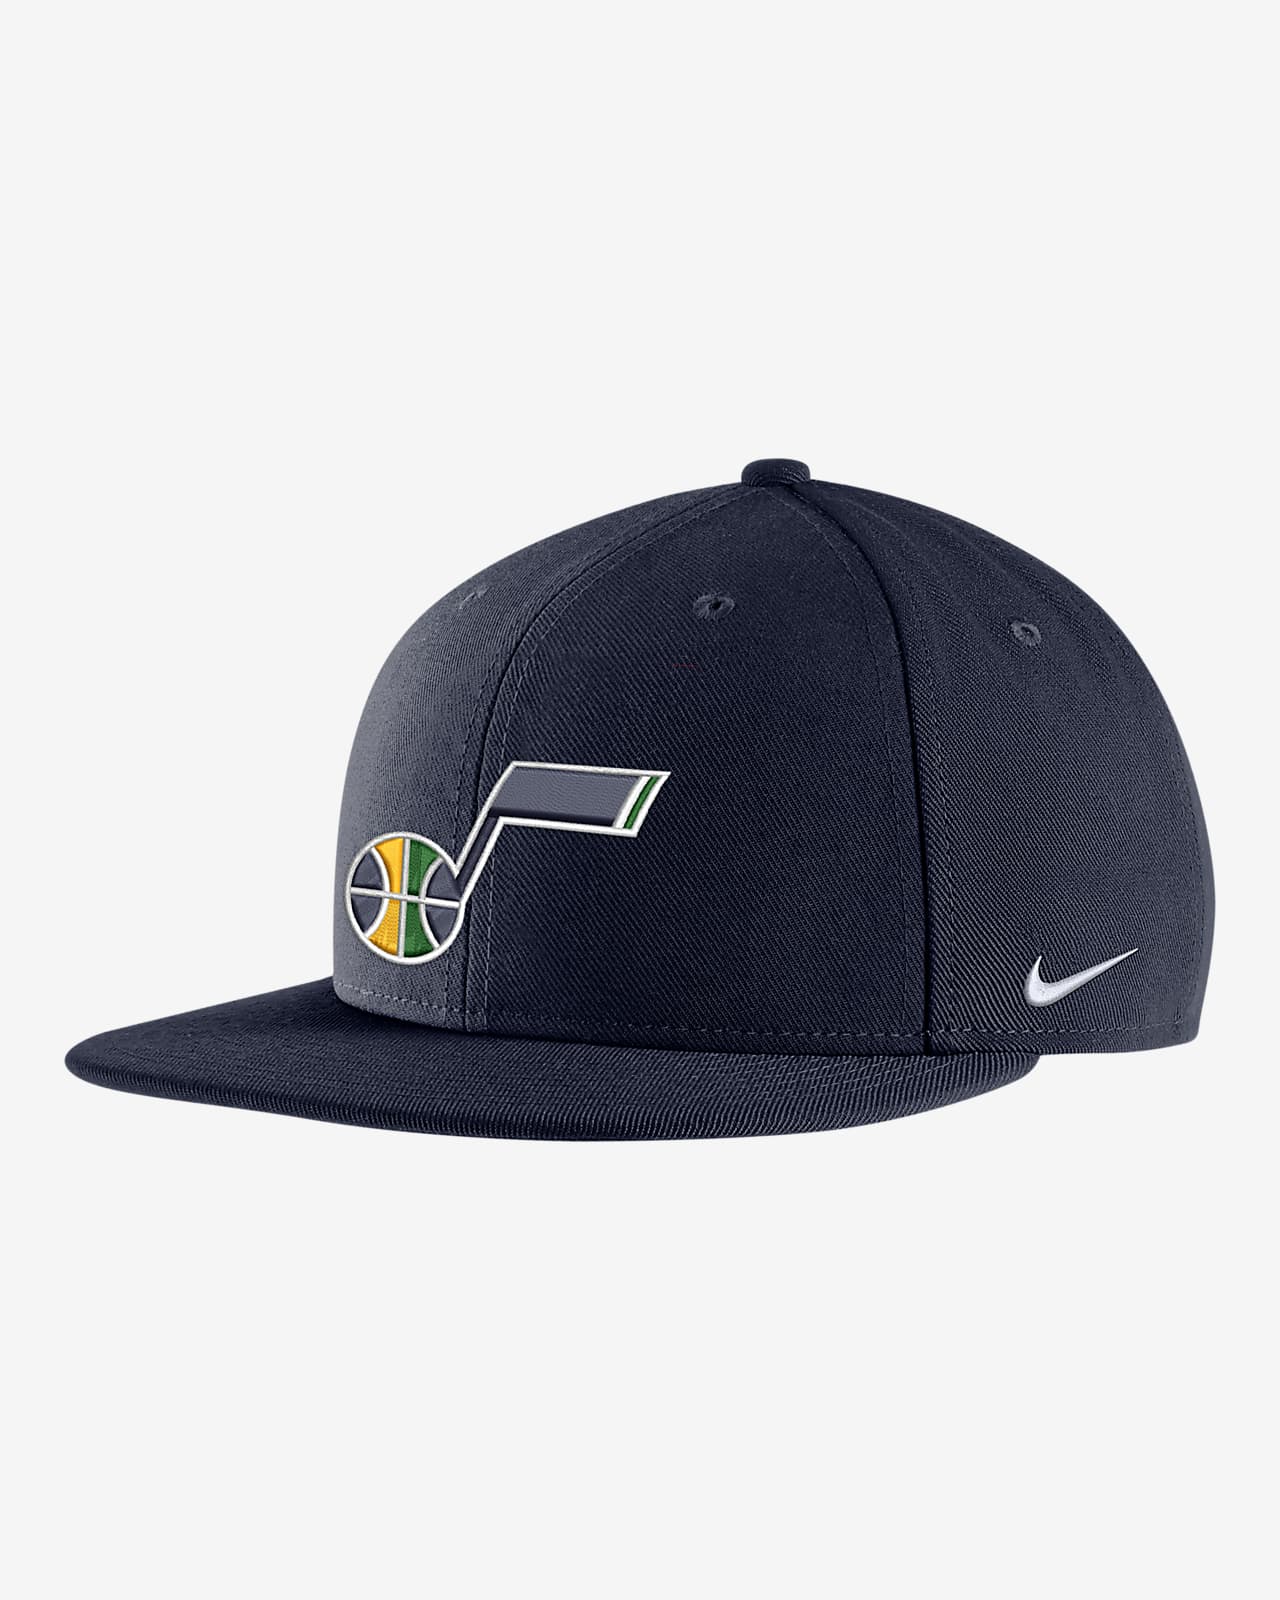 Inhalen verontschuldiging garage Utah Jazz Nike NBA Snapback Hat. Nike.com